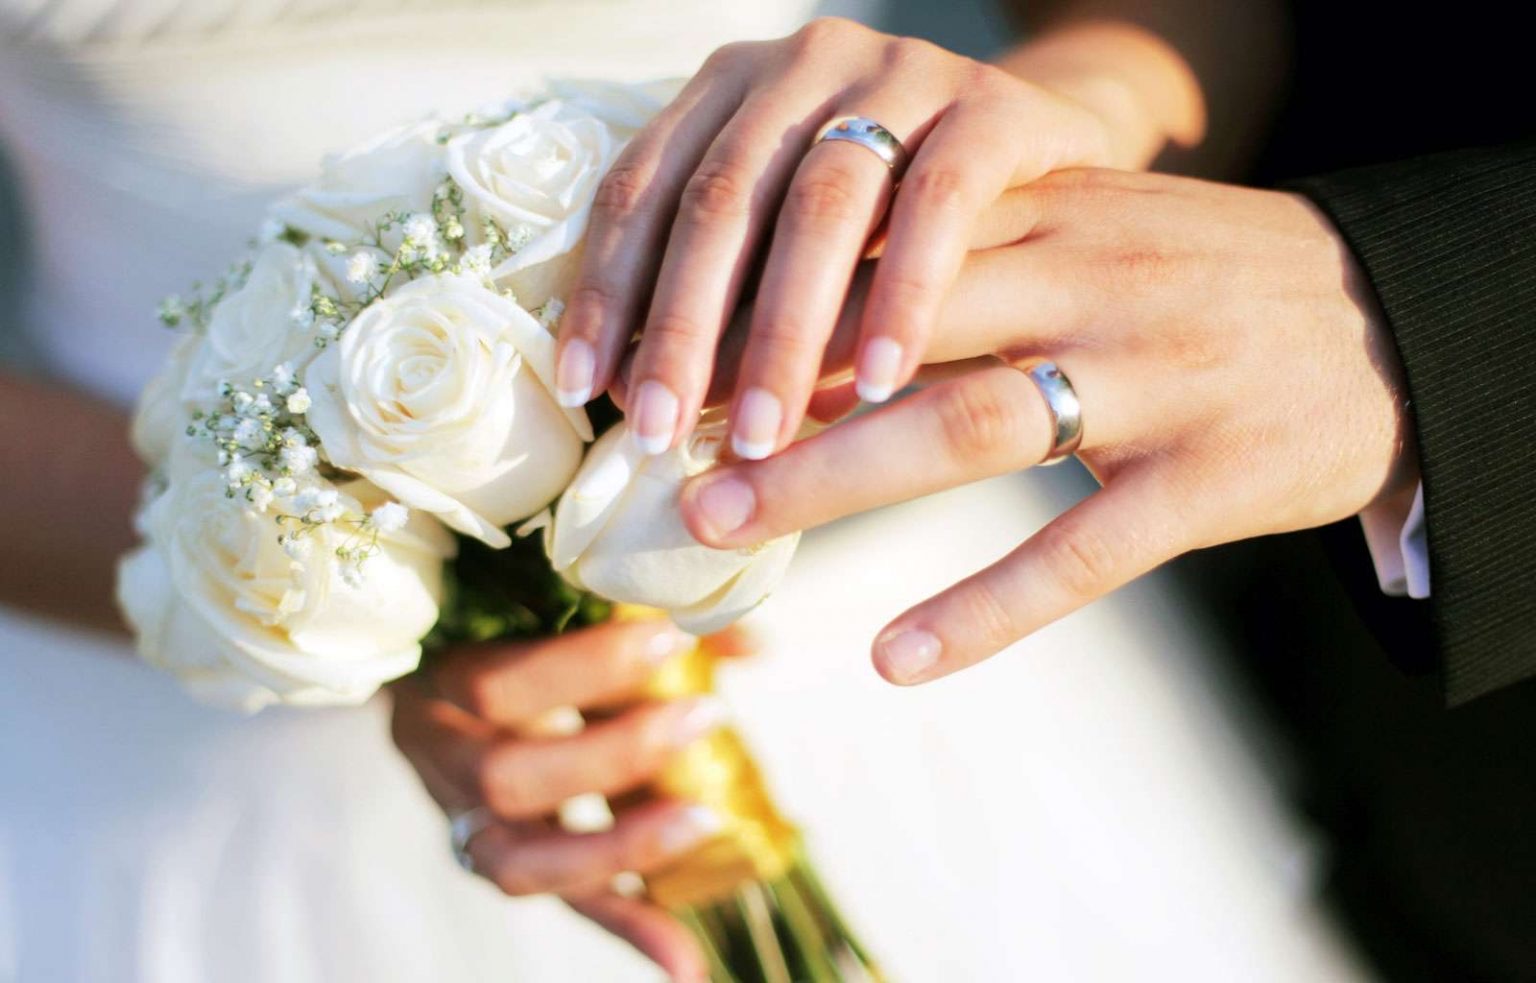 Shqiptarët martohen më pak/ Rritet numri i divorceve, shkak varfëria